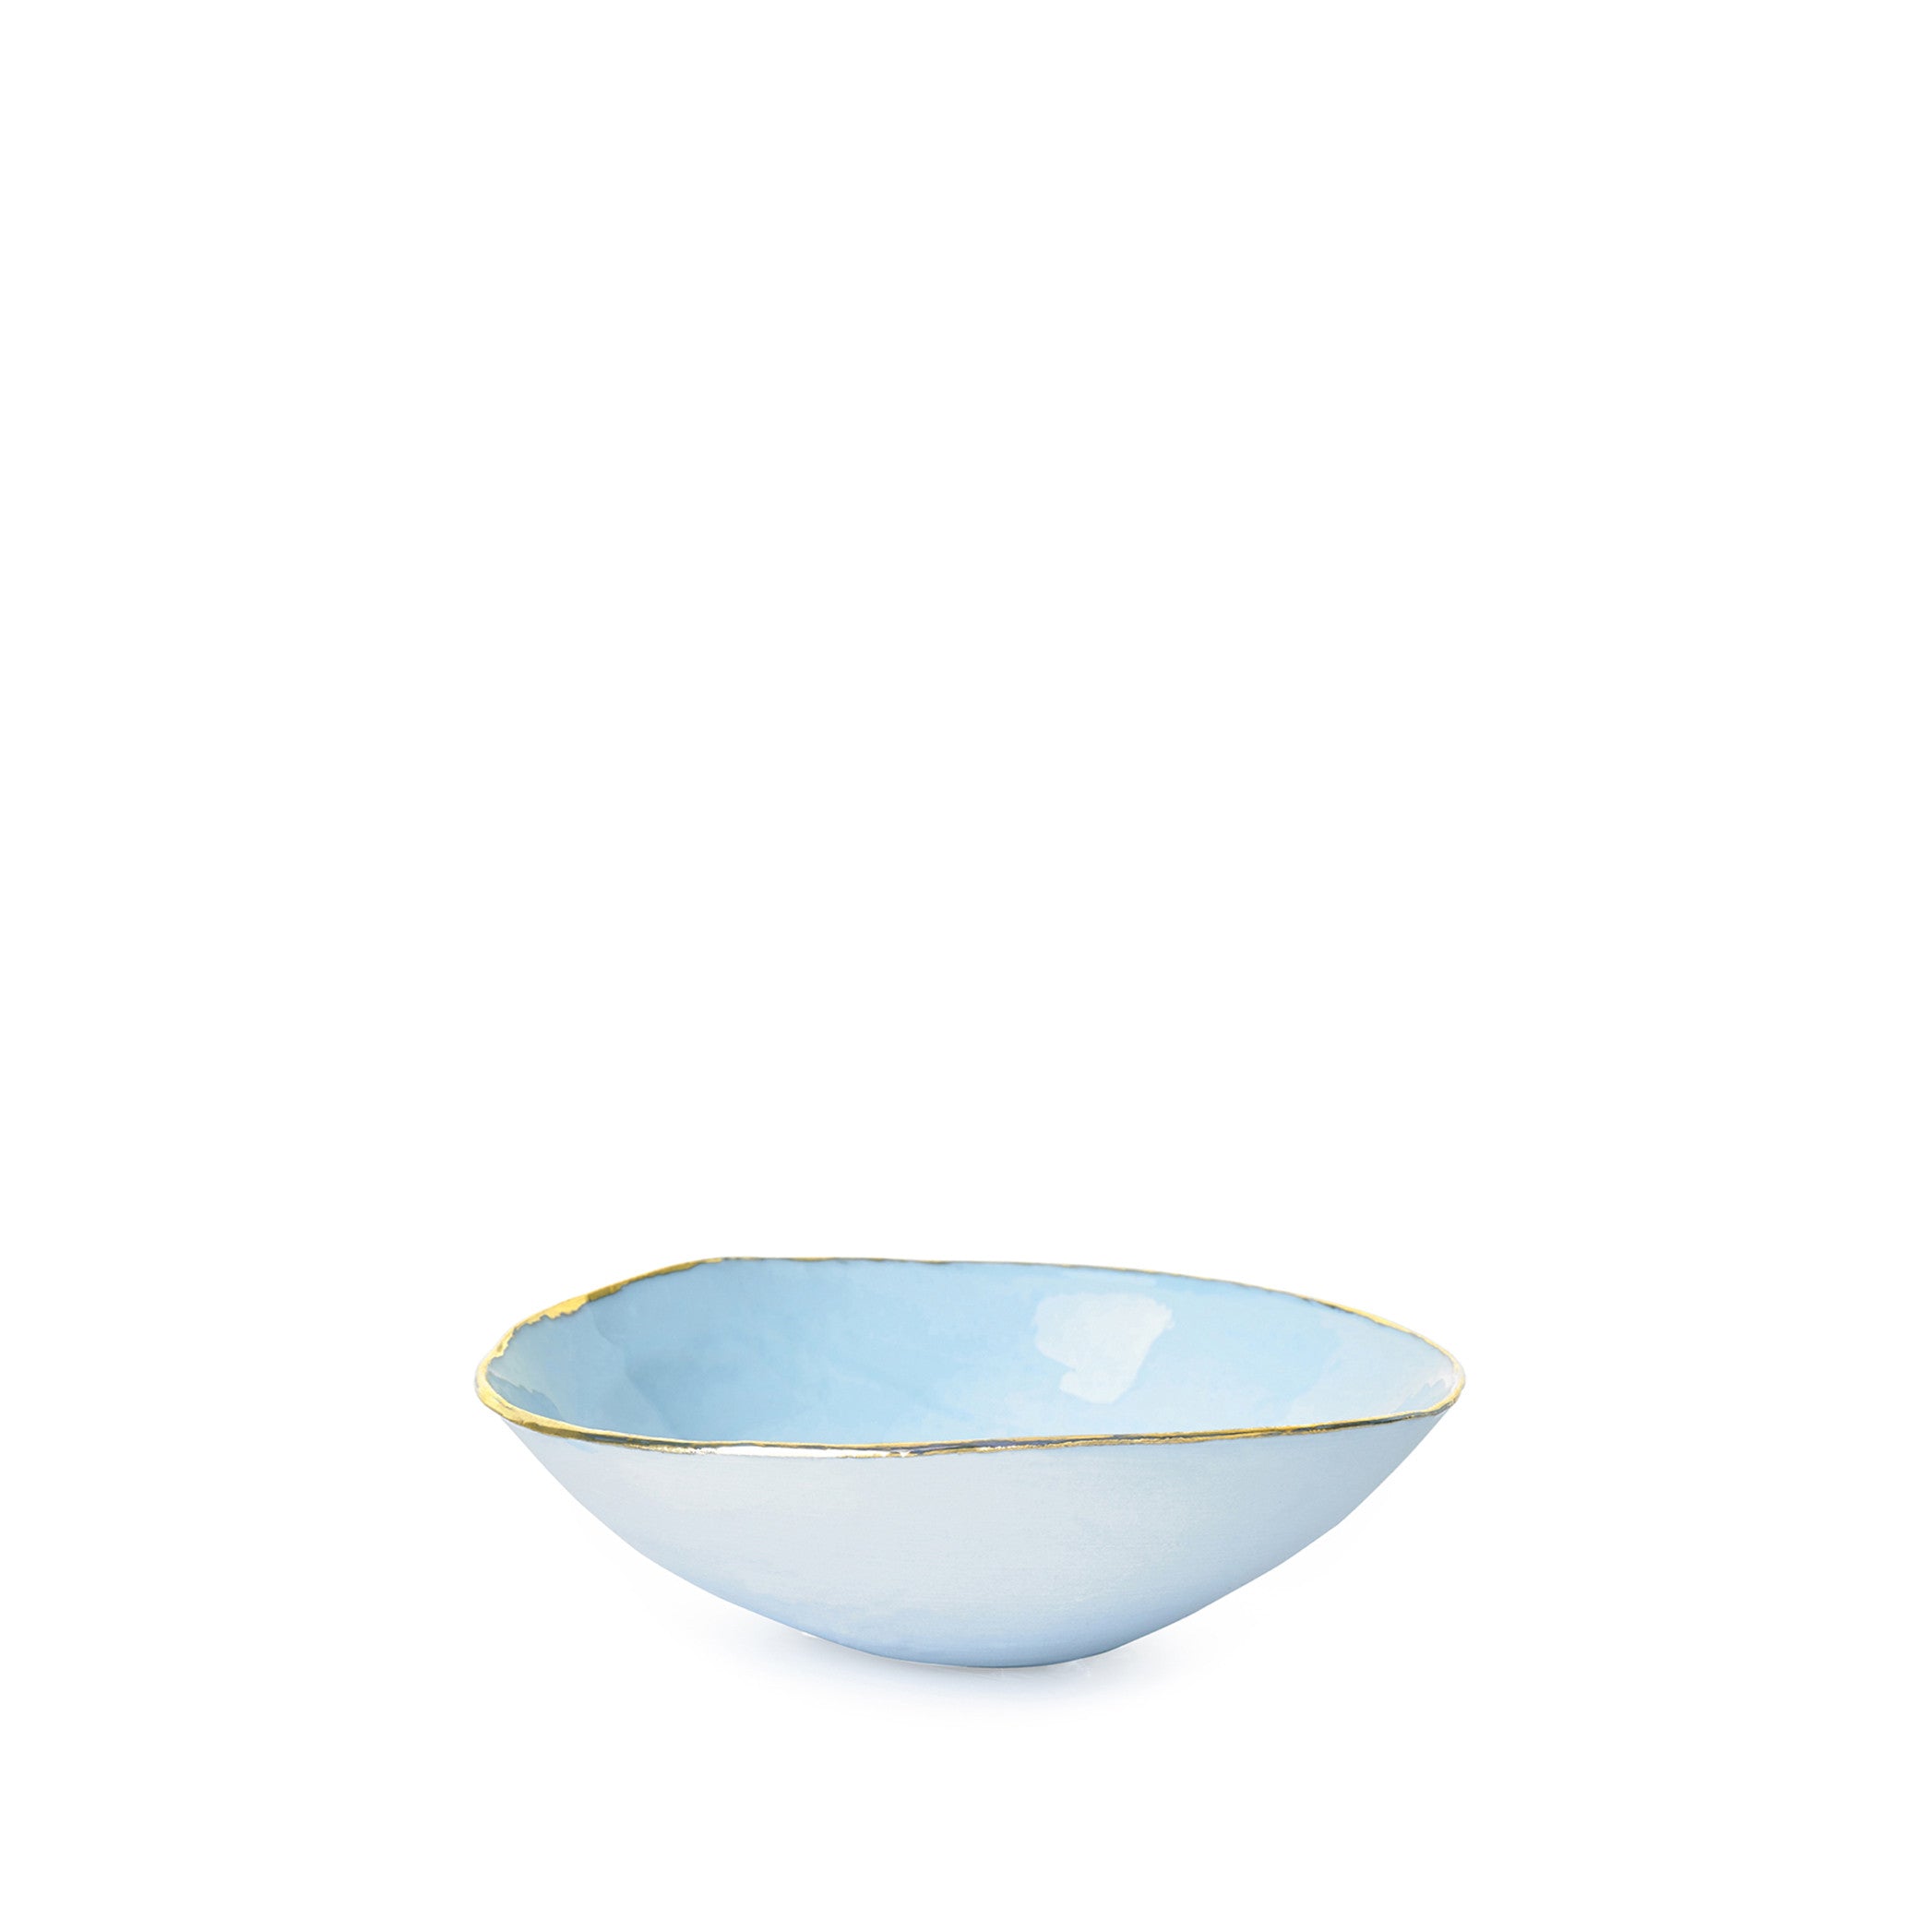 Light Blue Ceramic Bowl with Gold Rim, 10cm